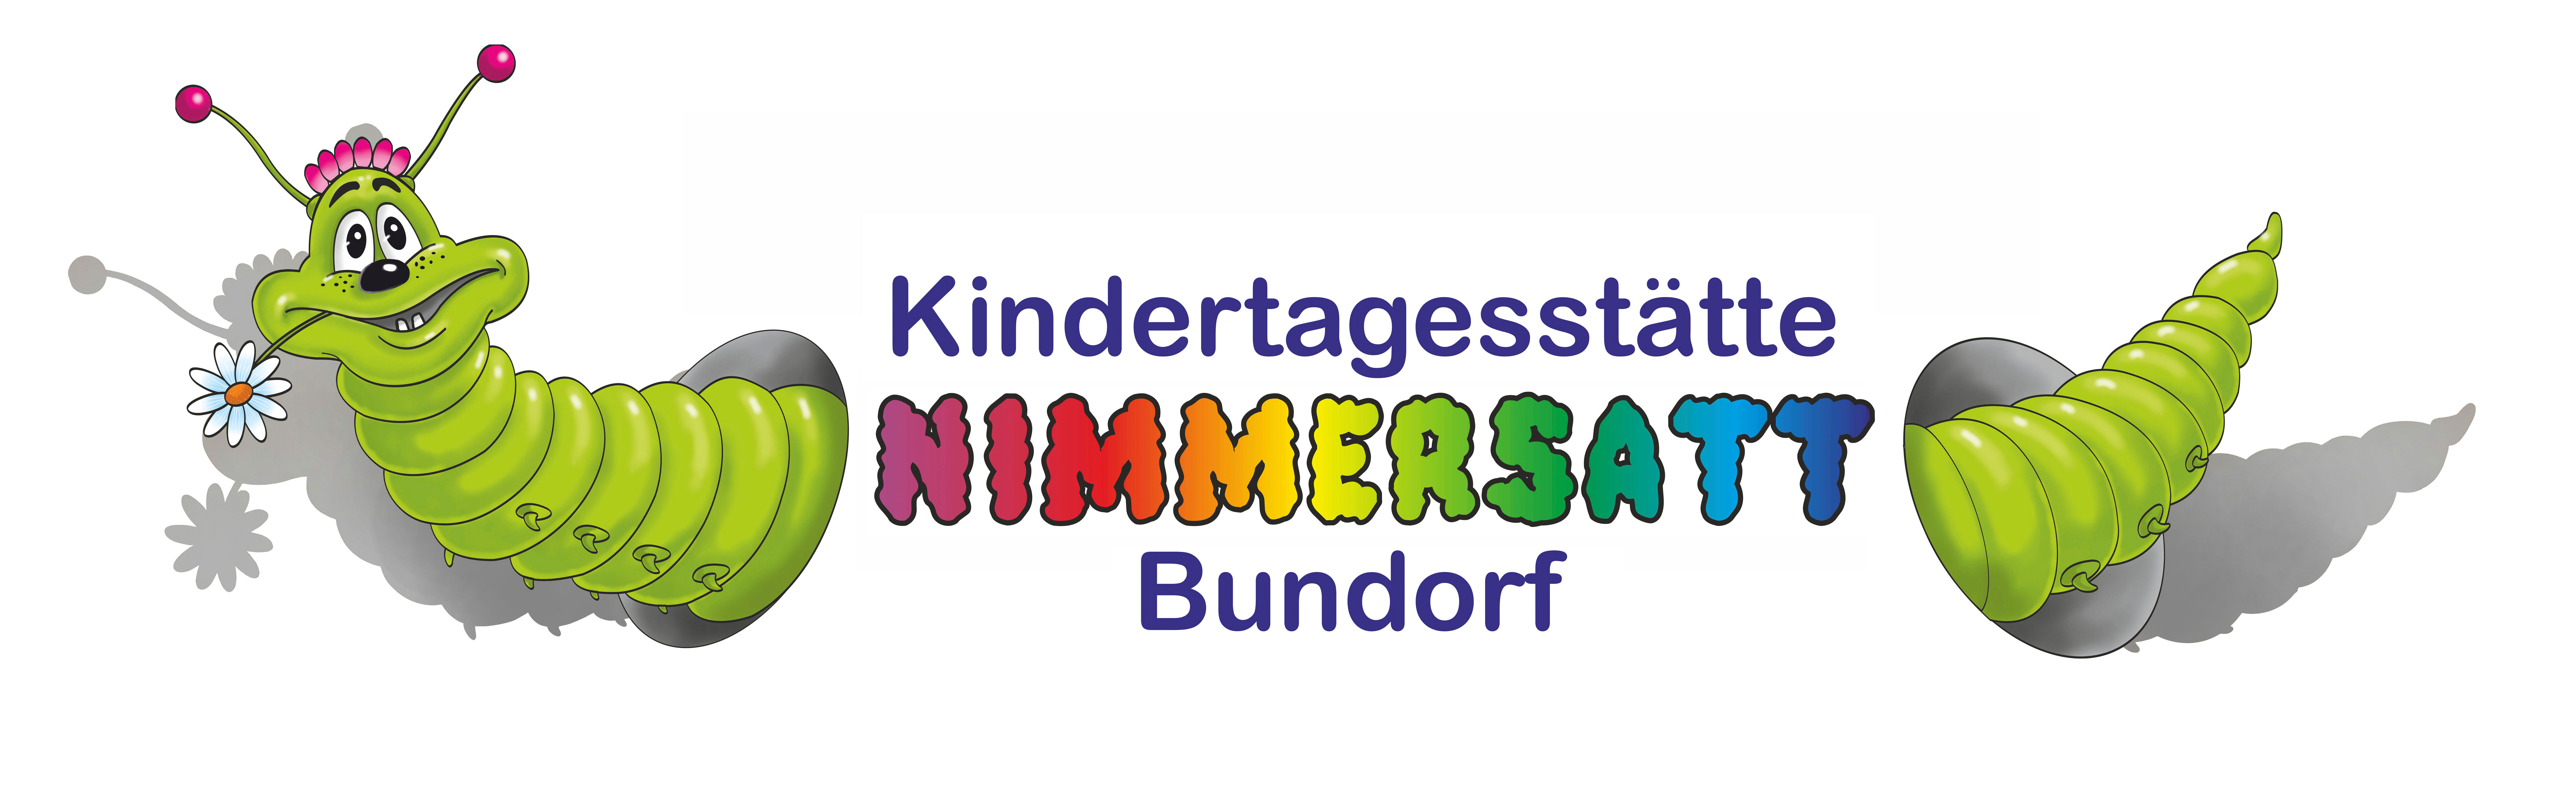 Website Kindergarten Nimmersatt Bundorf